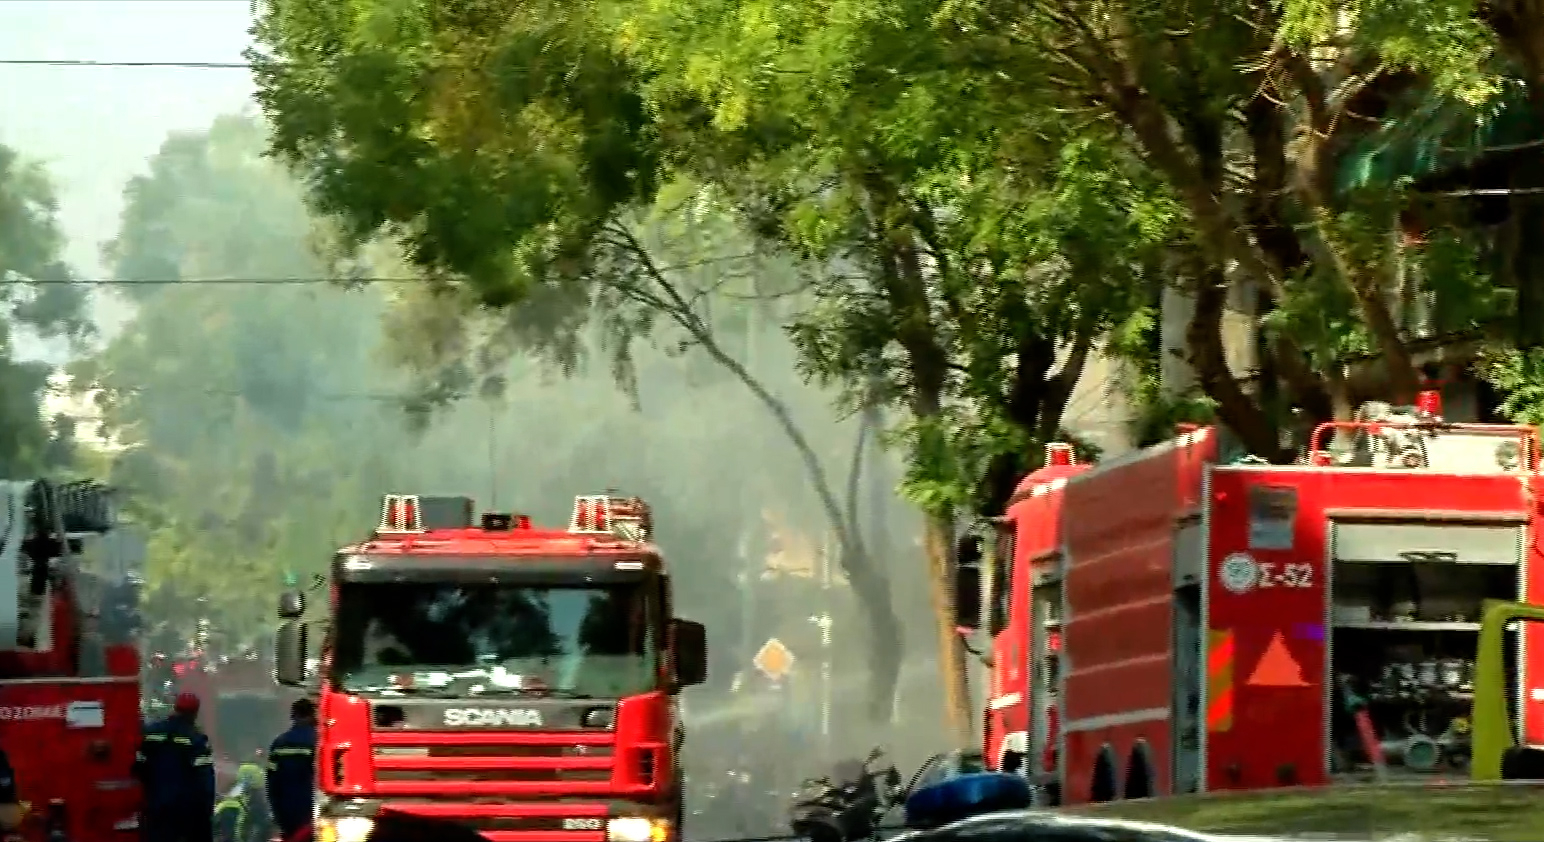 Έκρηξη σε κατάστημα στη συμβολή των οδών Αχαρνών και Ρόδου στο κέντρο της Αθήνας (video)